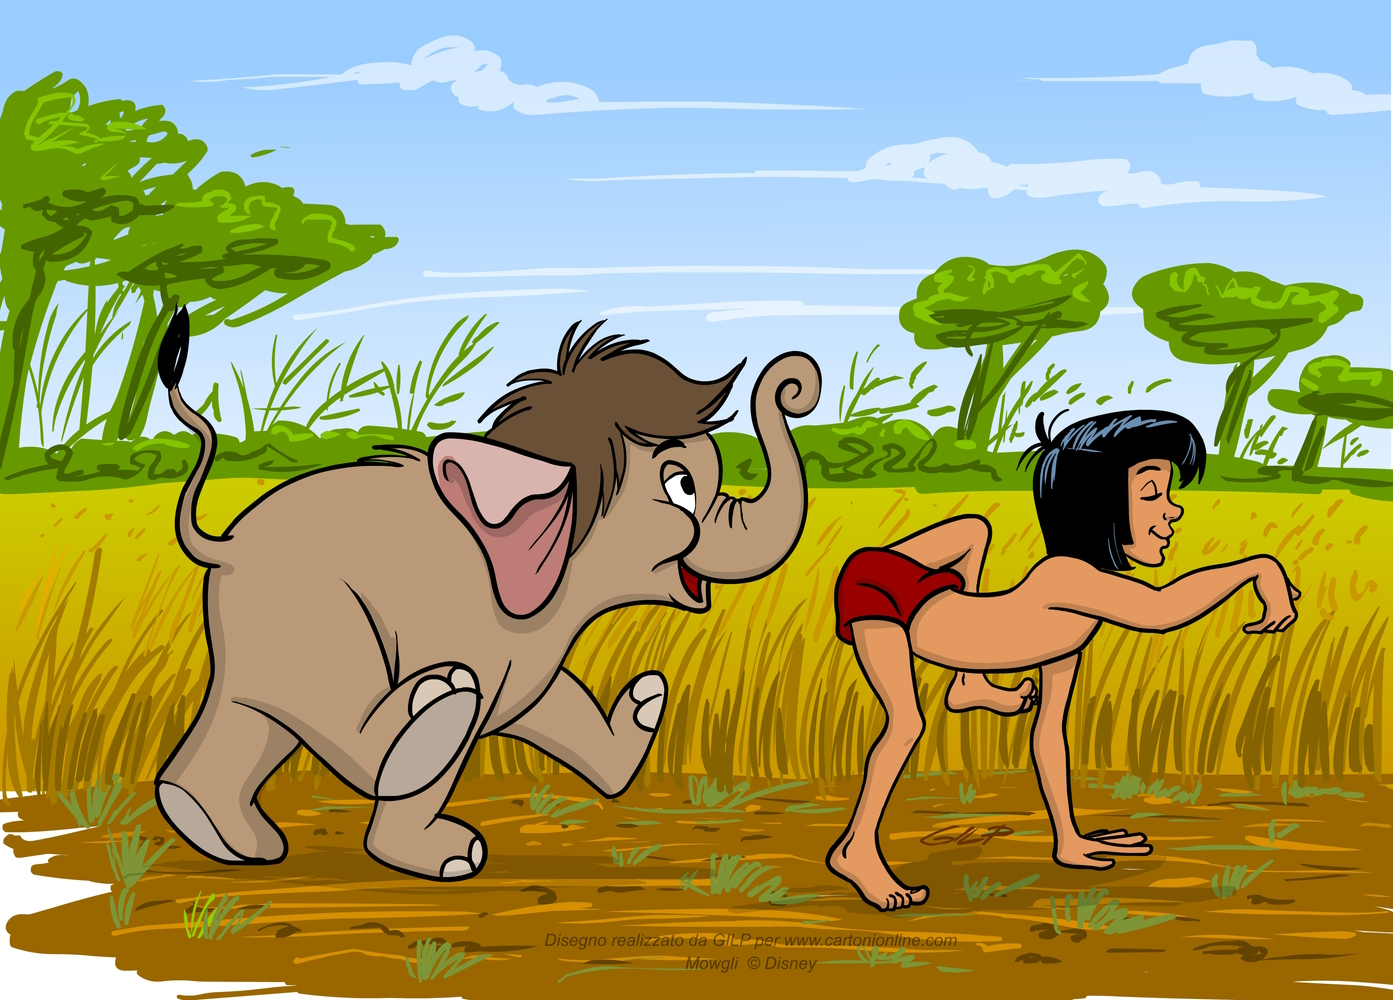 Mowgli och elefanten